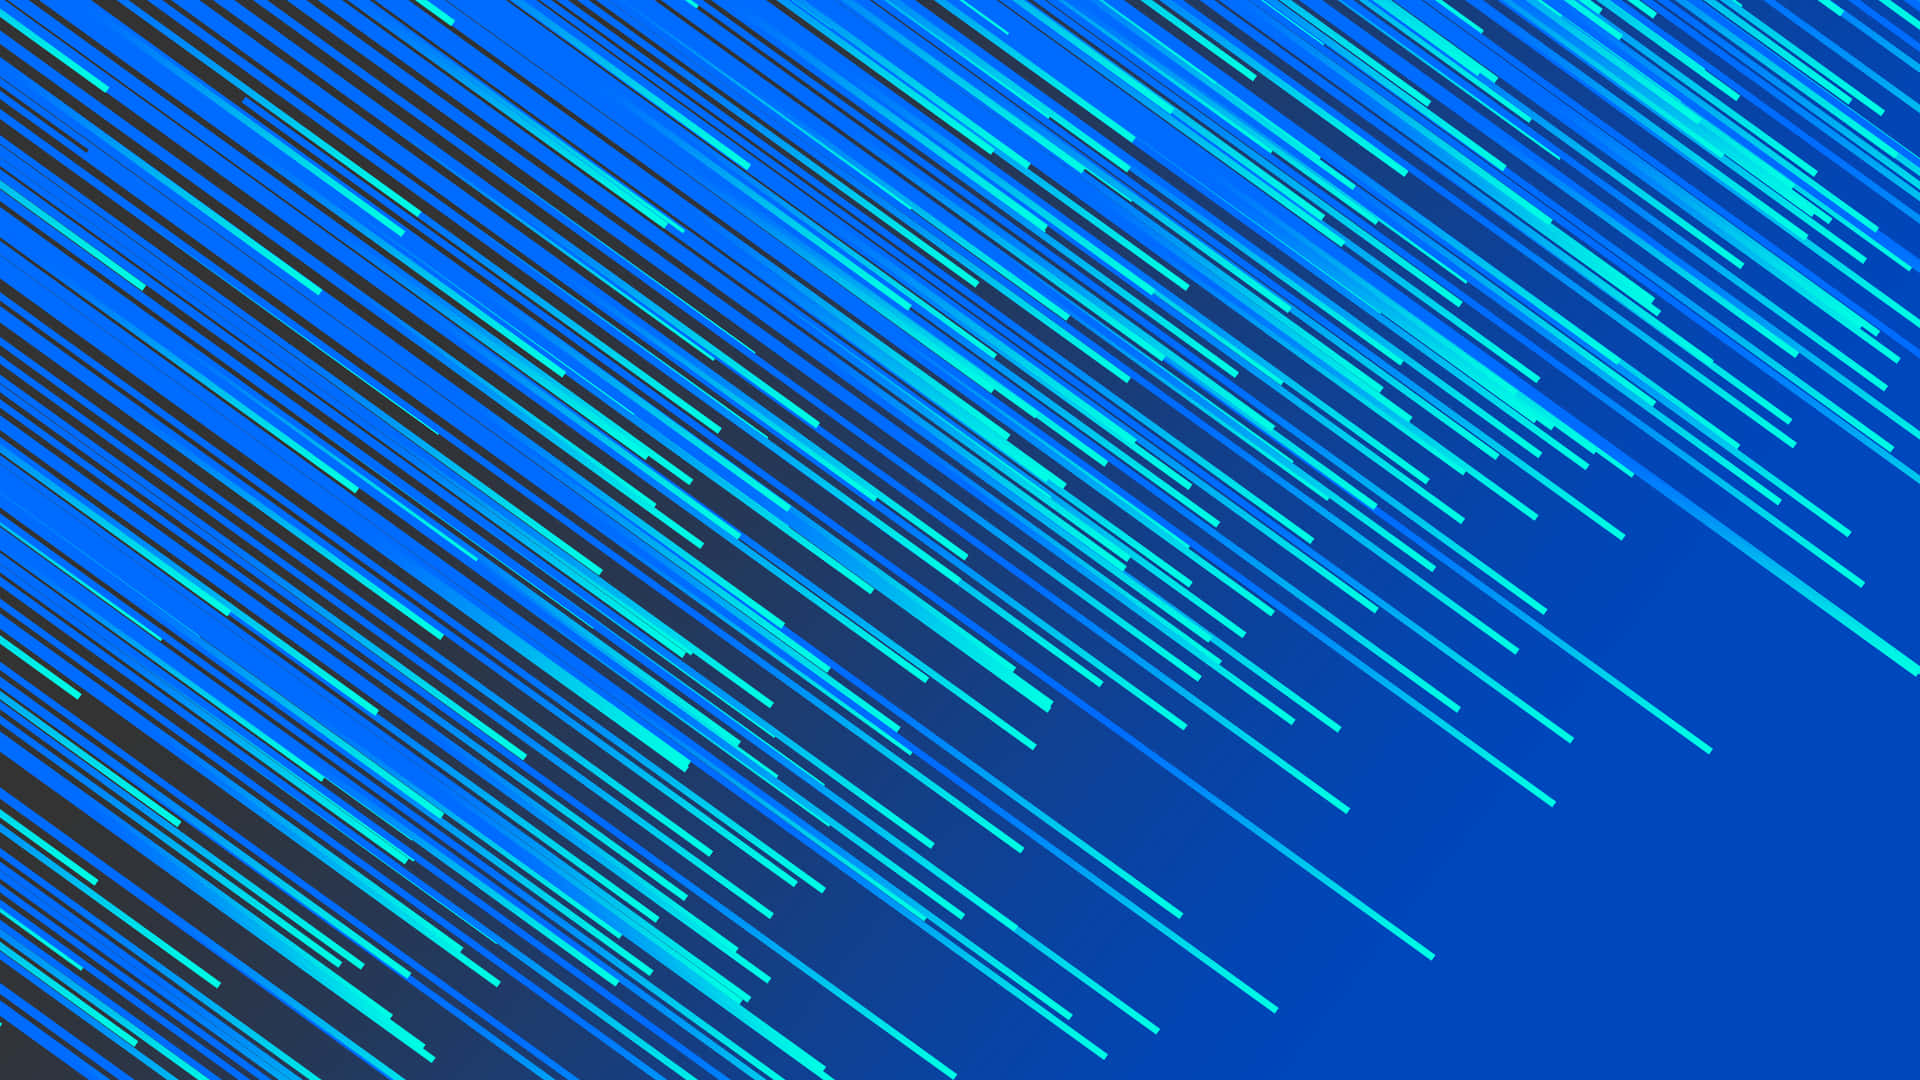 Unfondo De Escritorio Con Temática Azul, Limpio Y Sencillo. Fondo de pantalla